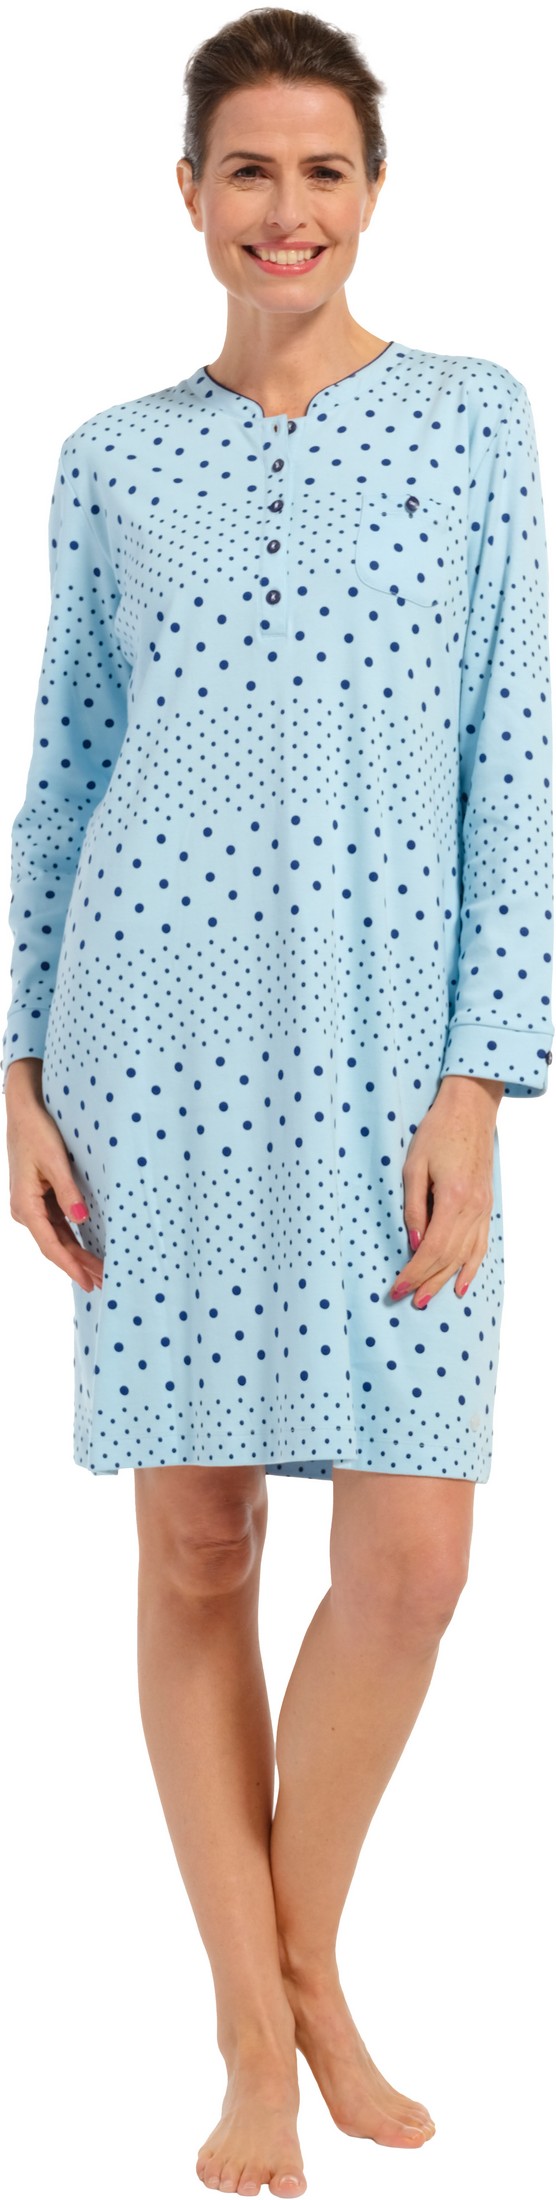 Pastunette dames nachthemd 10232-162-4 - Blauw - 42